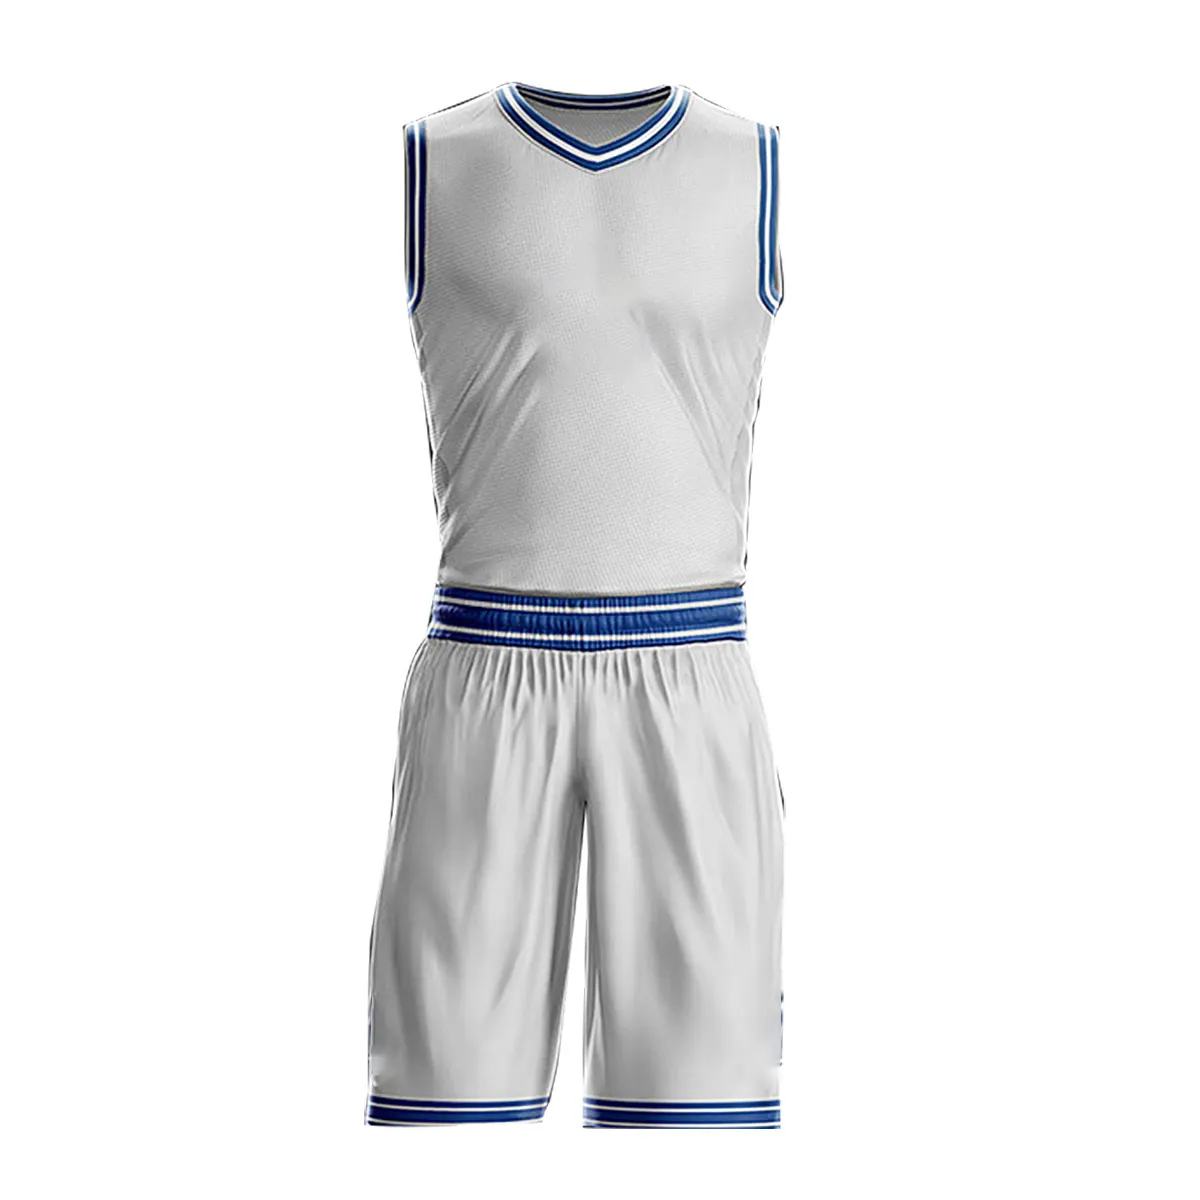 Personalizado su propio equipo uniformes de baloncesto reversible hombre de sublimación impreso cosido jersey de baloncesto